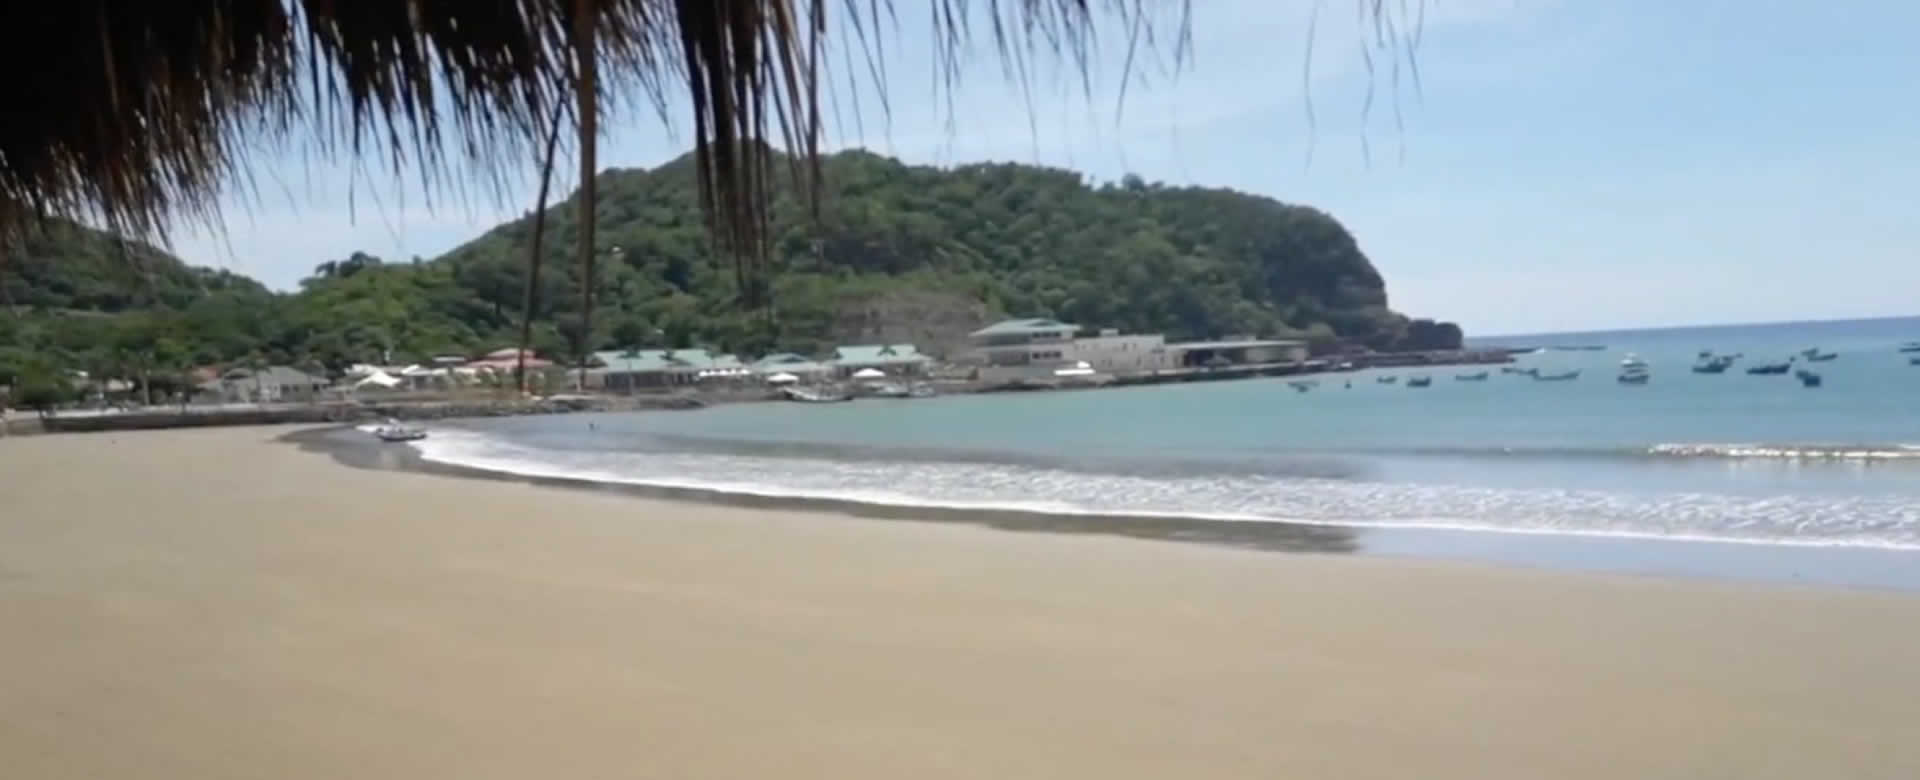 San Juan del Sur te ofrece paquete turístico completo a precios módicos